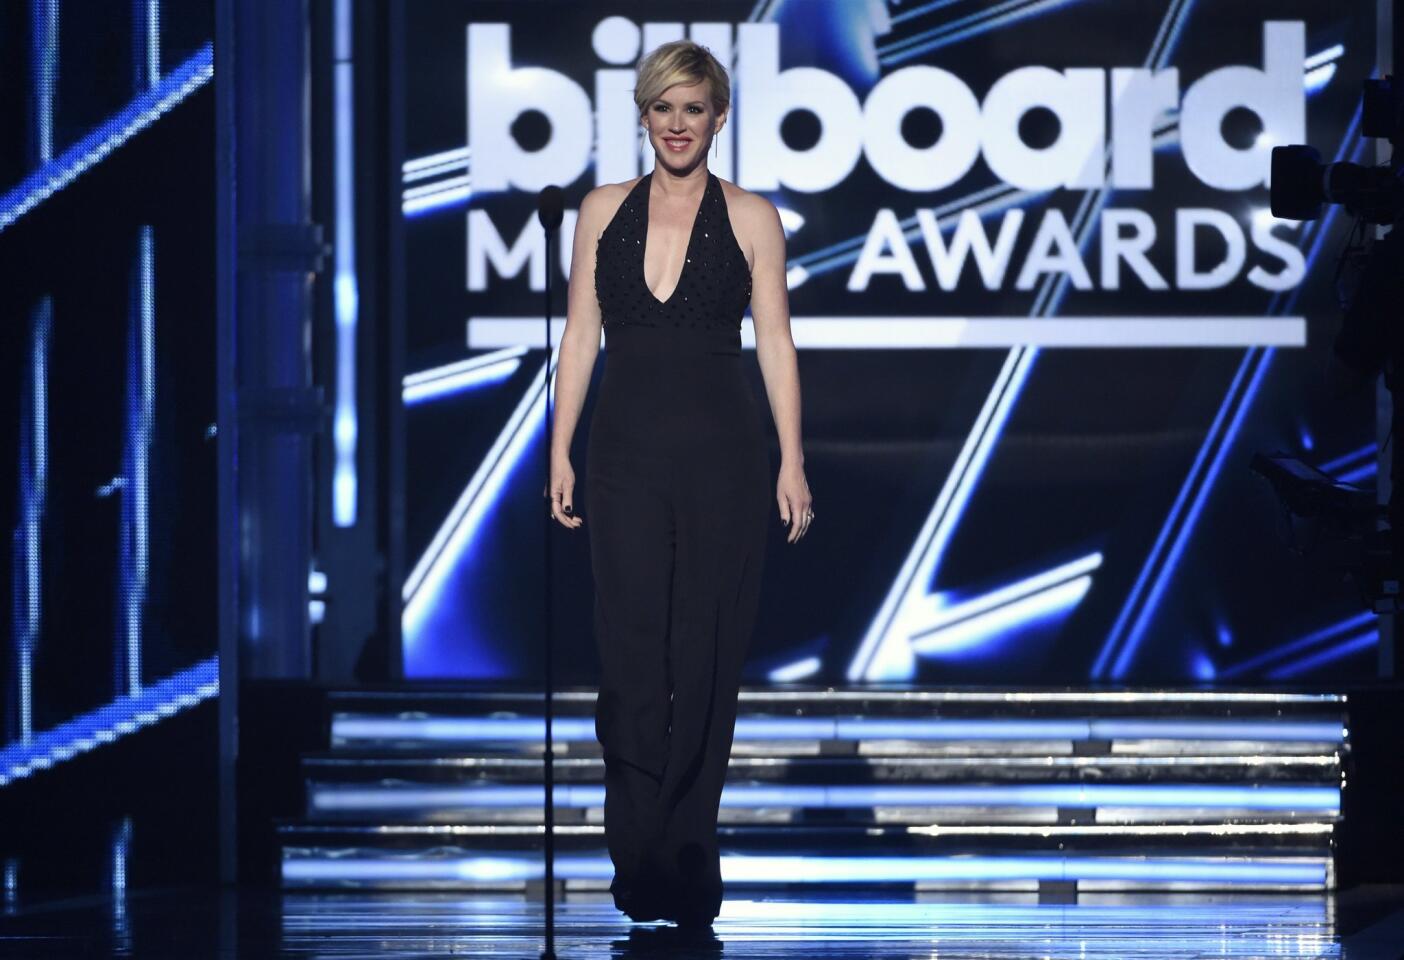 Billboard Music Awards 2015 highlights